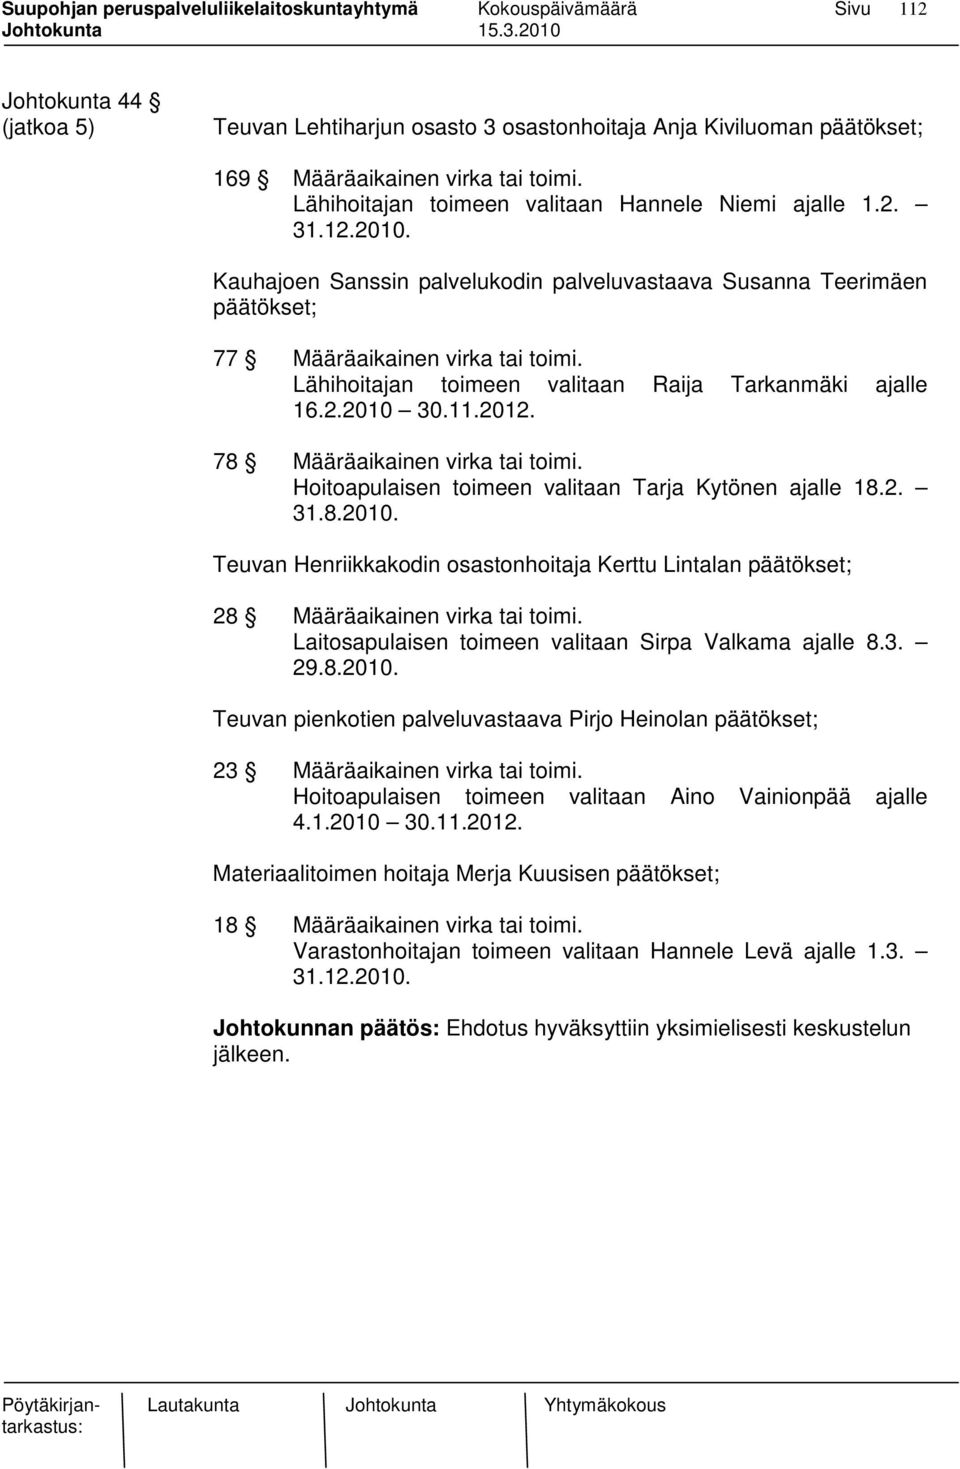 78 Määräaikainen virka tai toimi. Hoitoapulaisen toimeen valitaan Tarja Kytönen ajalle 18.2. 31.8.2010.